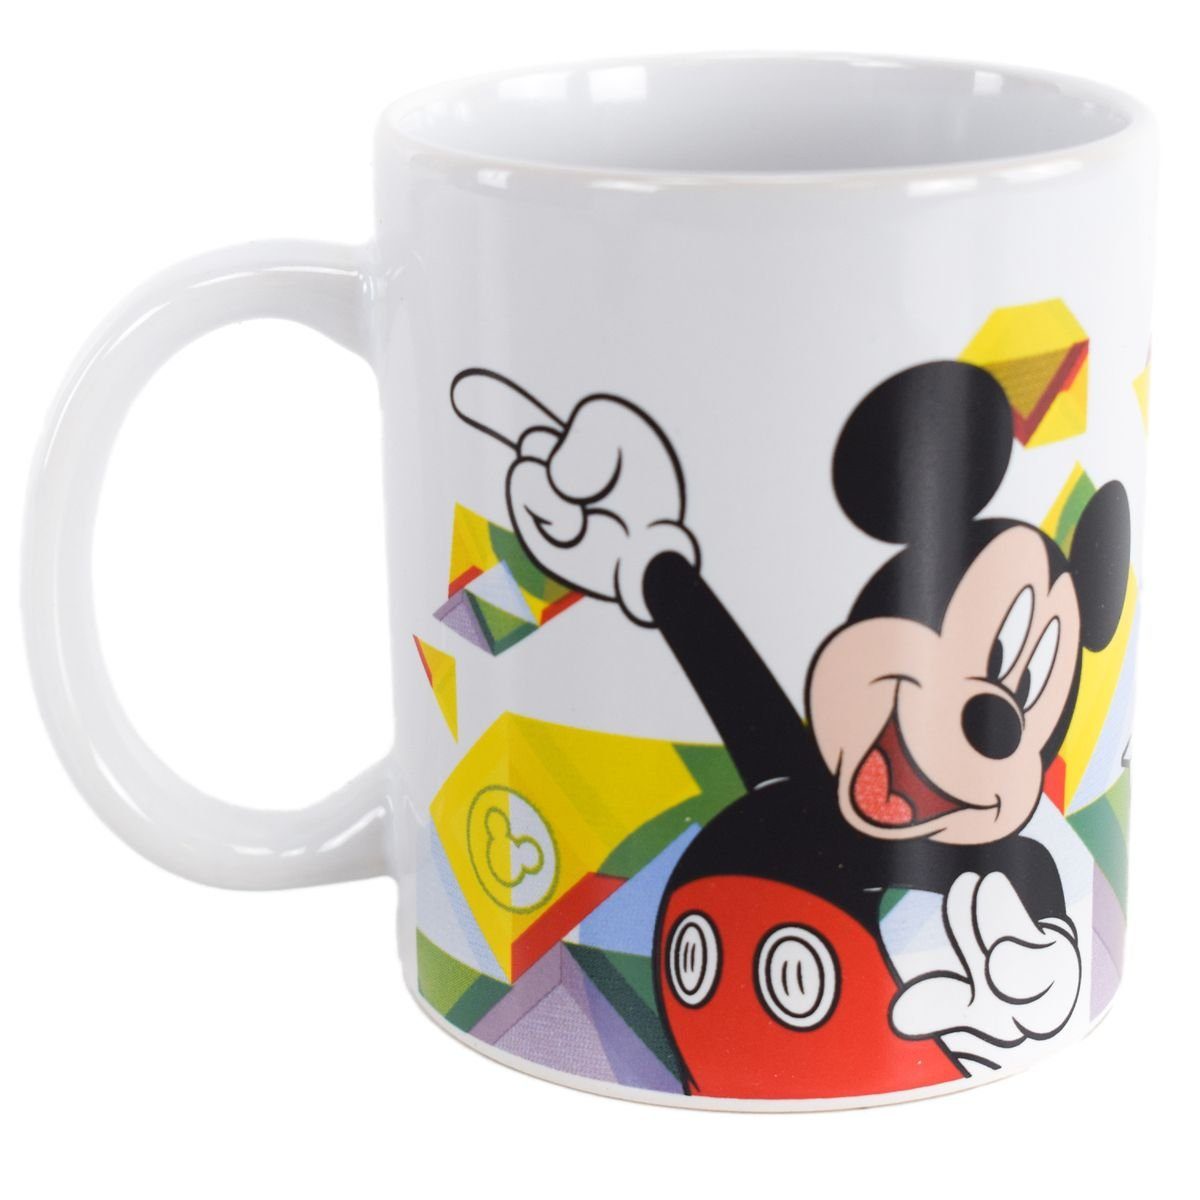 325 Tasse Mouse ml Mickey authentisches ca. Tasse mit Motiv Kindertasse, Geschenkkarton Keramik, in Stor Design